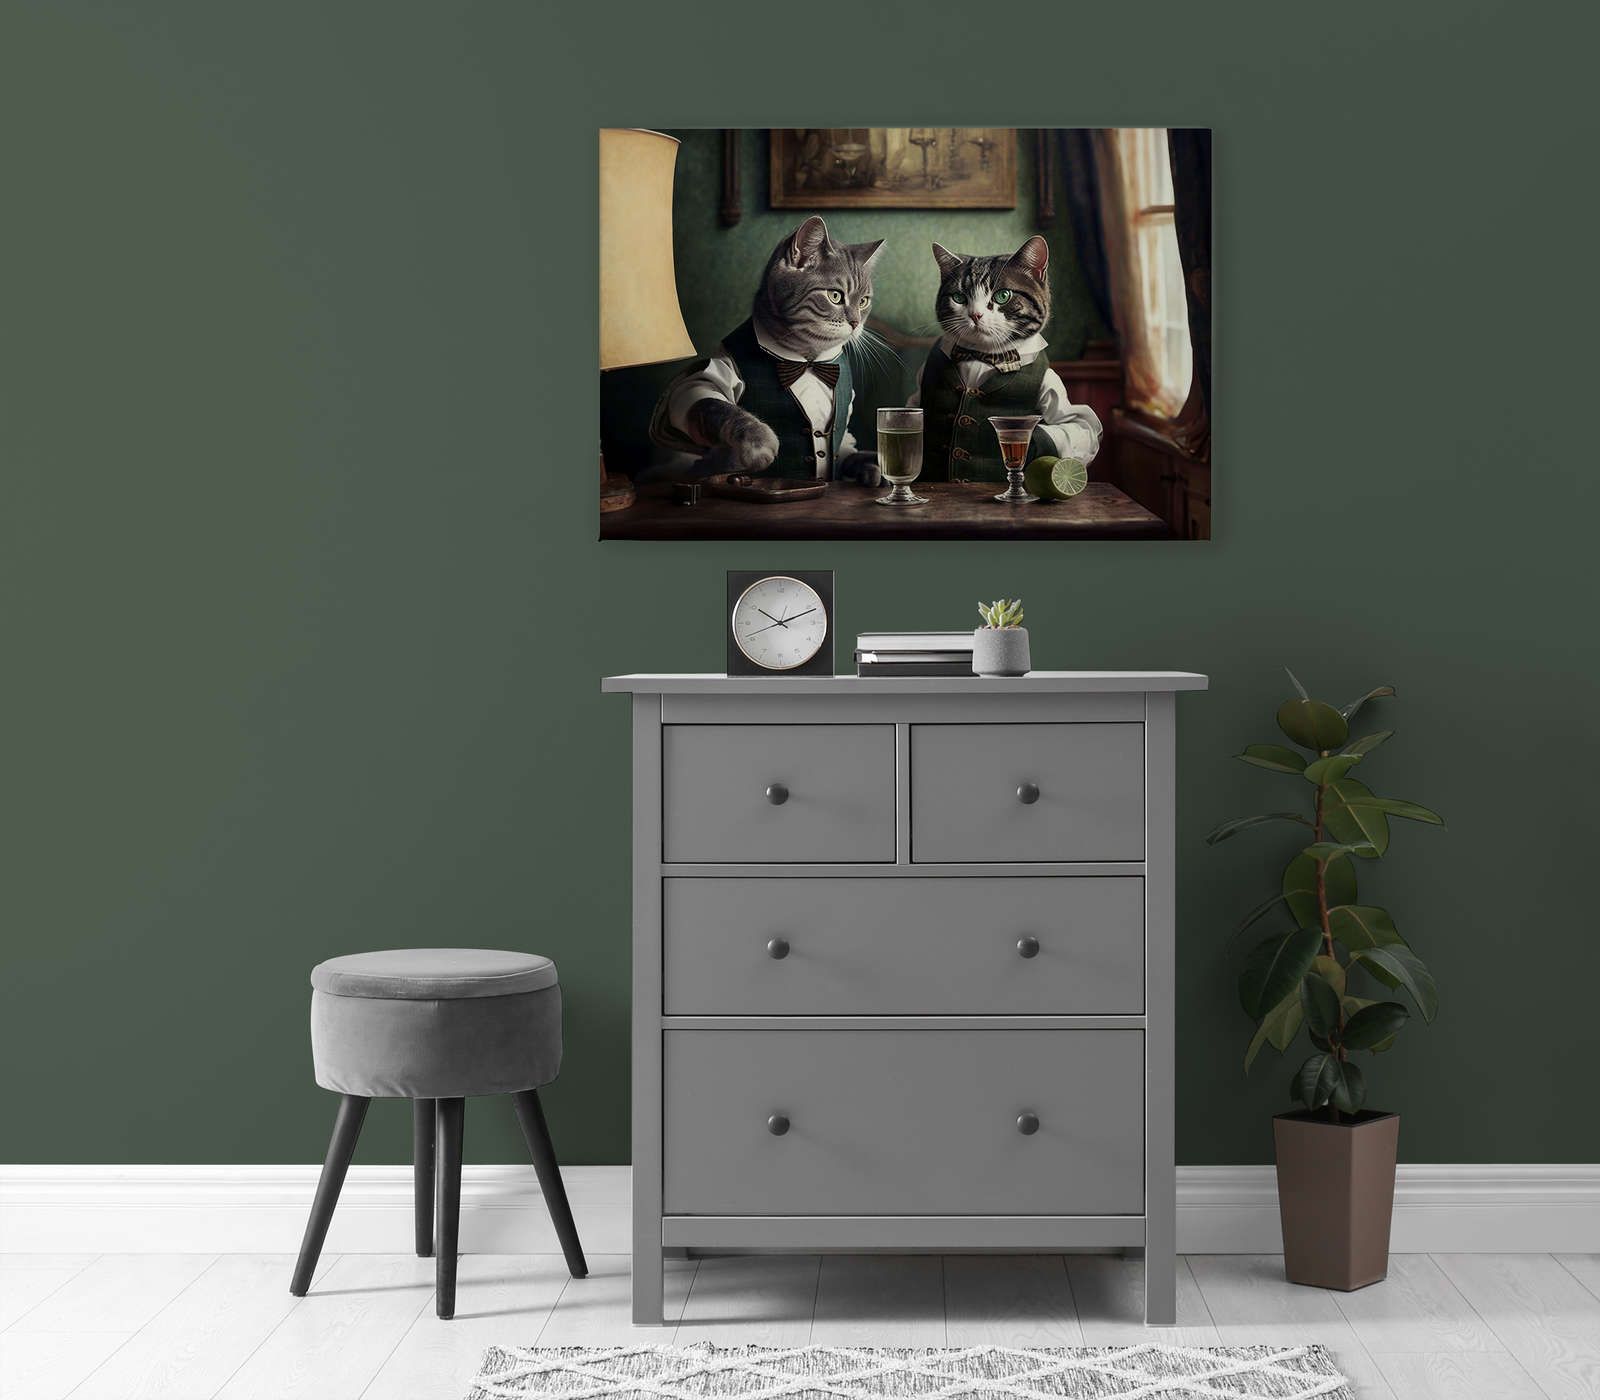             KI Canvas schilderij »Kitty Bar 2« - 90 cm x 60 cm
        